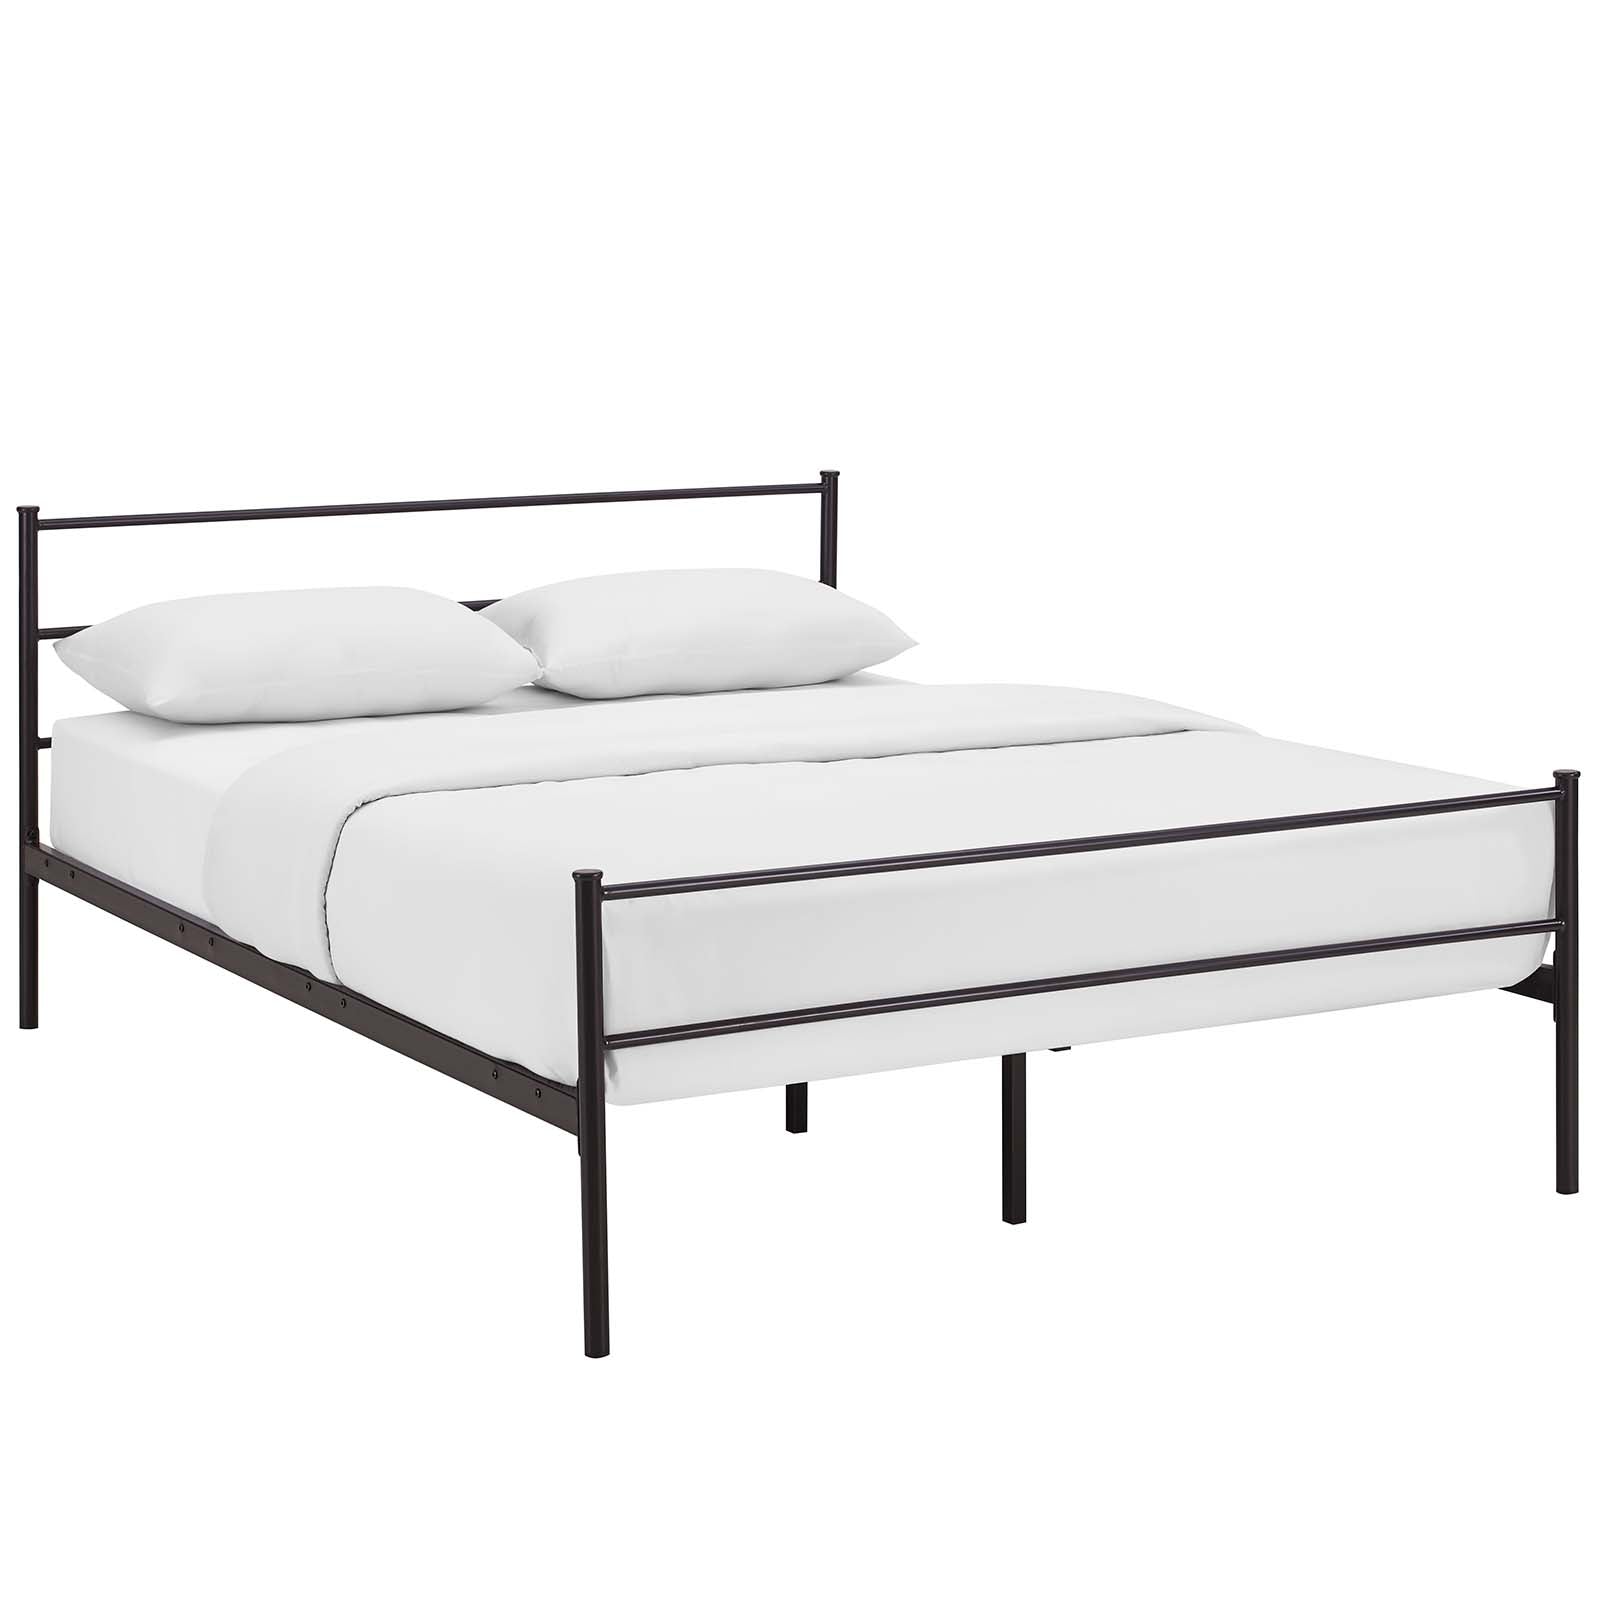 Modway Beds - Alina Full Platform Bed Frame Brown